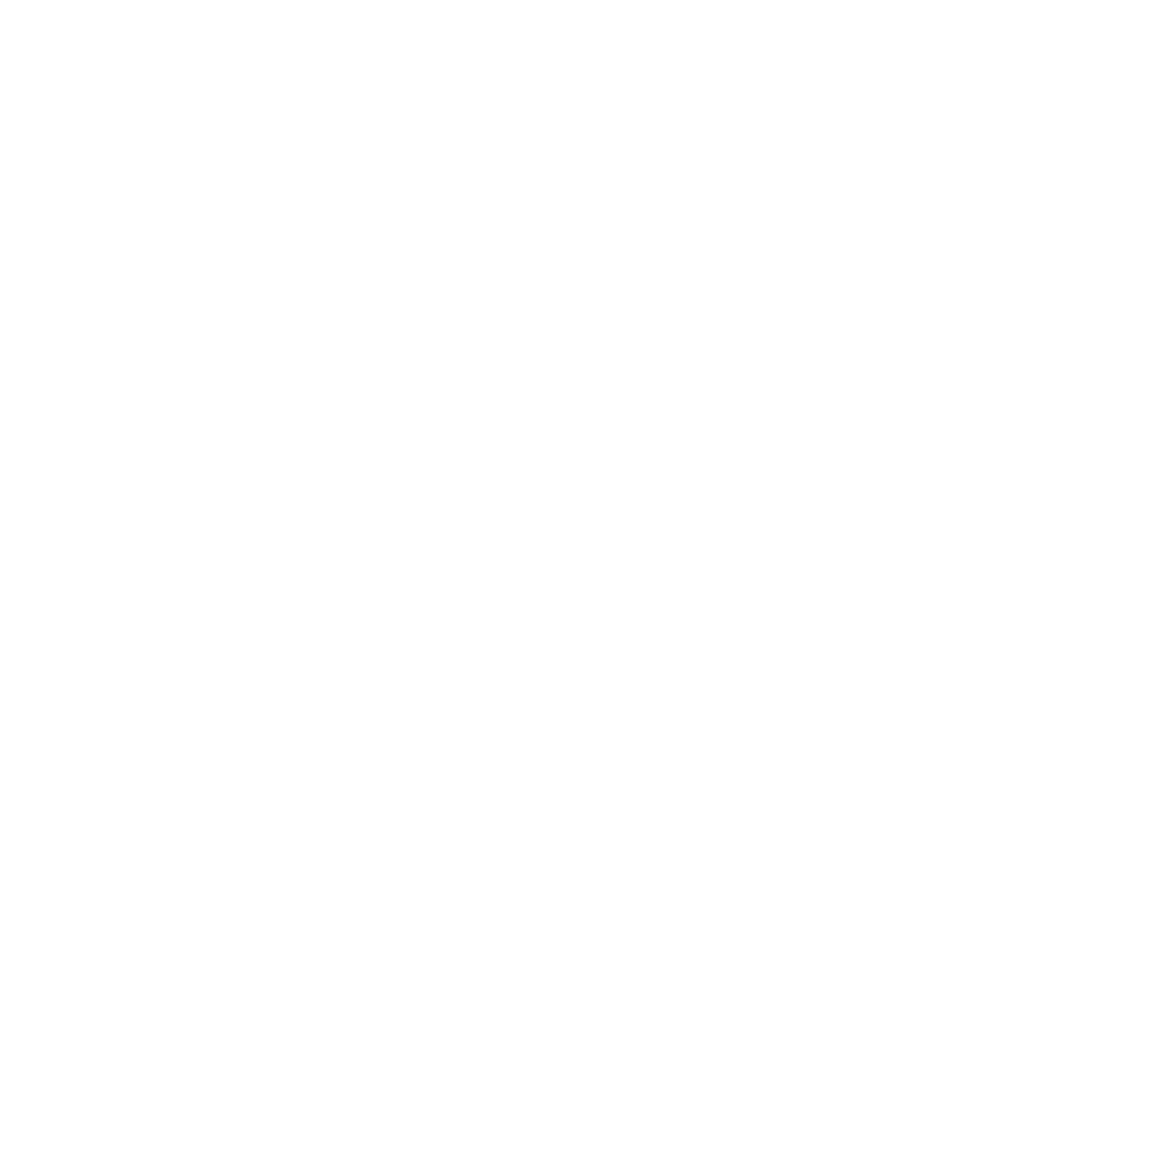 360 Tours